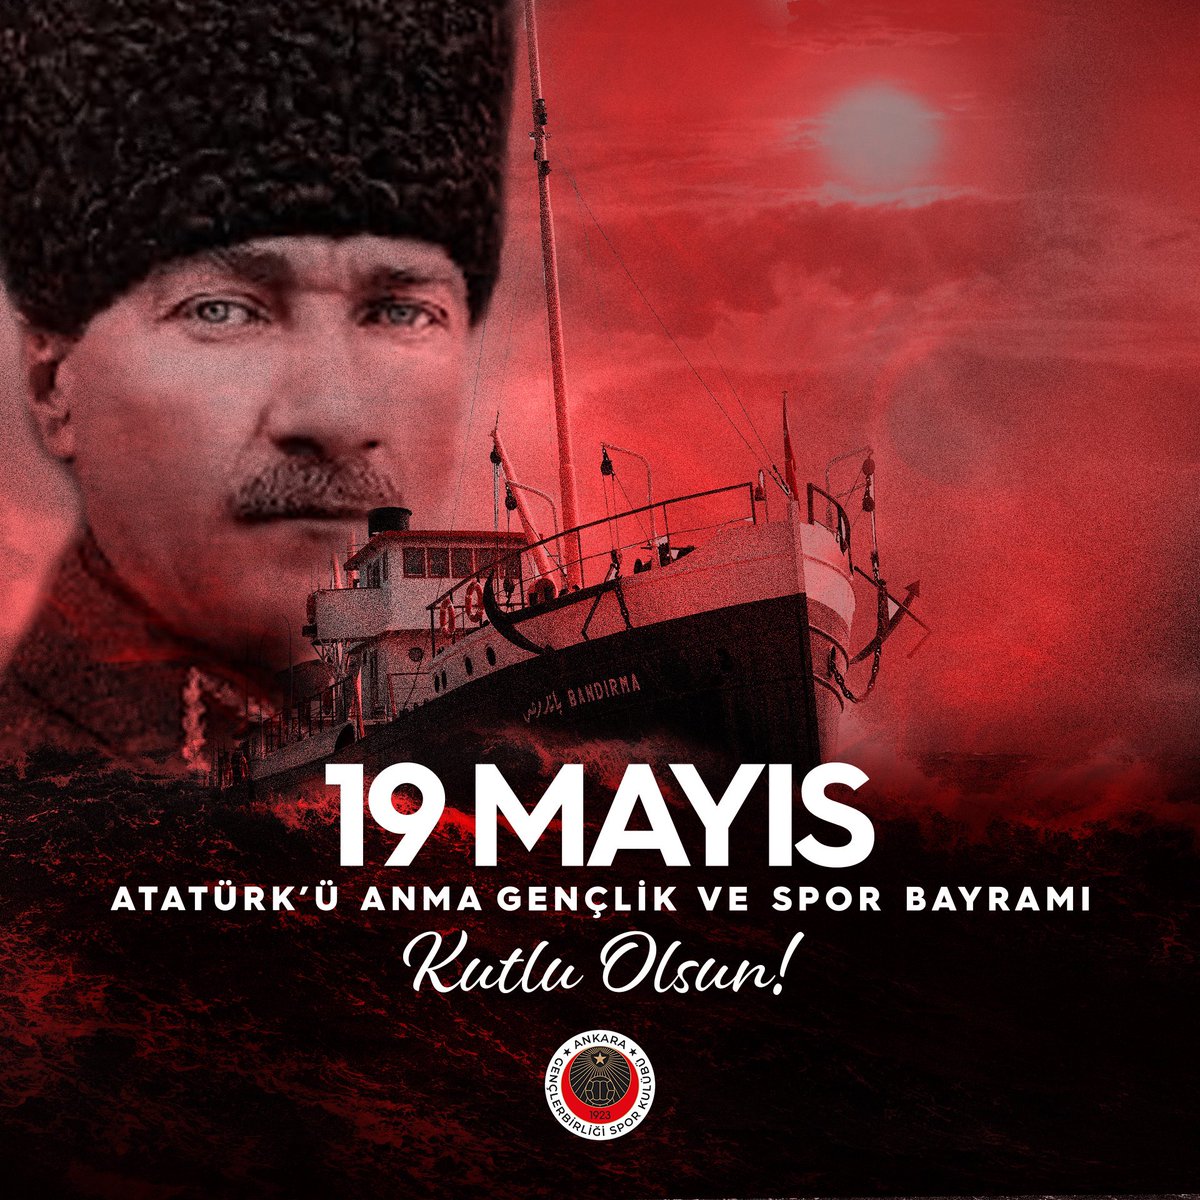 'Ey yükselen yeni nesil! İstikbal sizsiniz. Cumhuriyeti biz kurduk, onu yükseltecek ve yüceltecek olan sizsiniz.'

19 Mayıs Atatürk'ü Anma, Gençlik ve Spor Bayramımız Kutlu Olsun. 🇹🇷